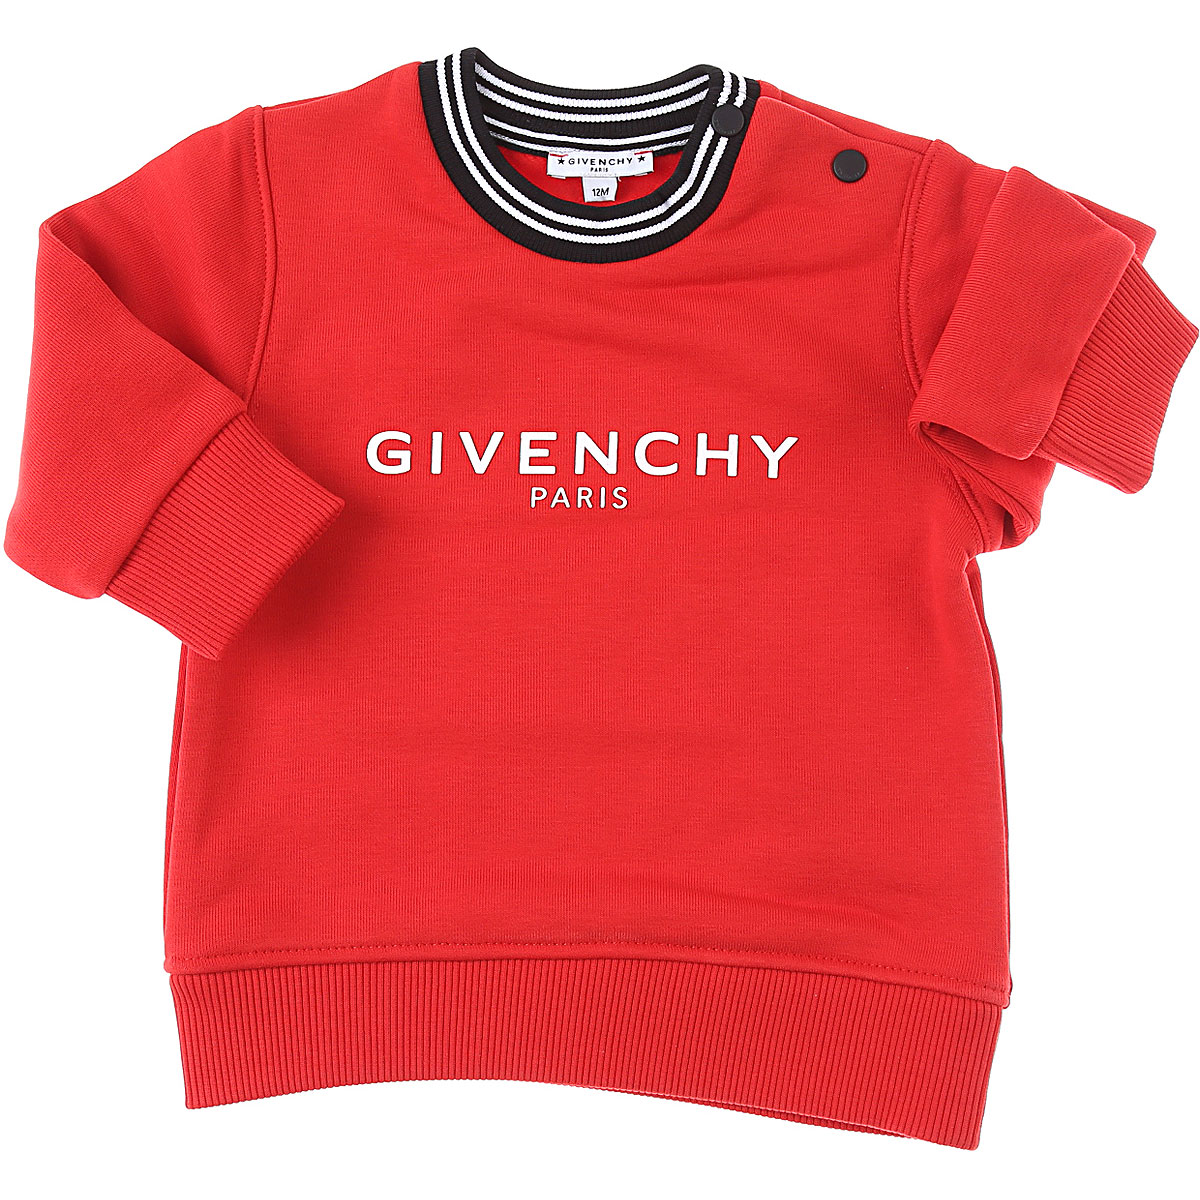 Givenchy Baby Sweatshirt & Kapuzenpullover für Jungen Günstig im Sale, Rot, Baumwolle, 2017, 18M 9M